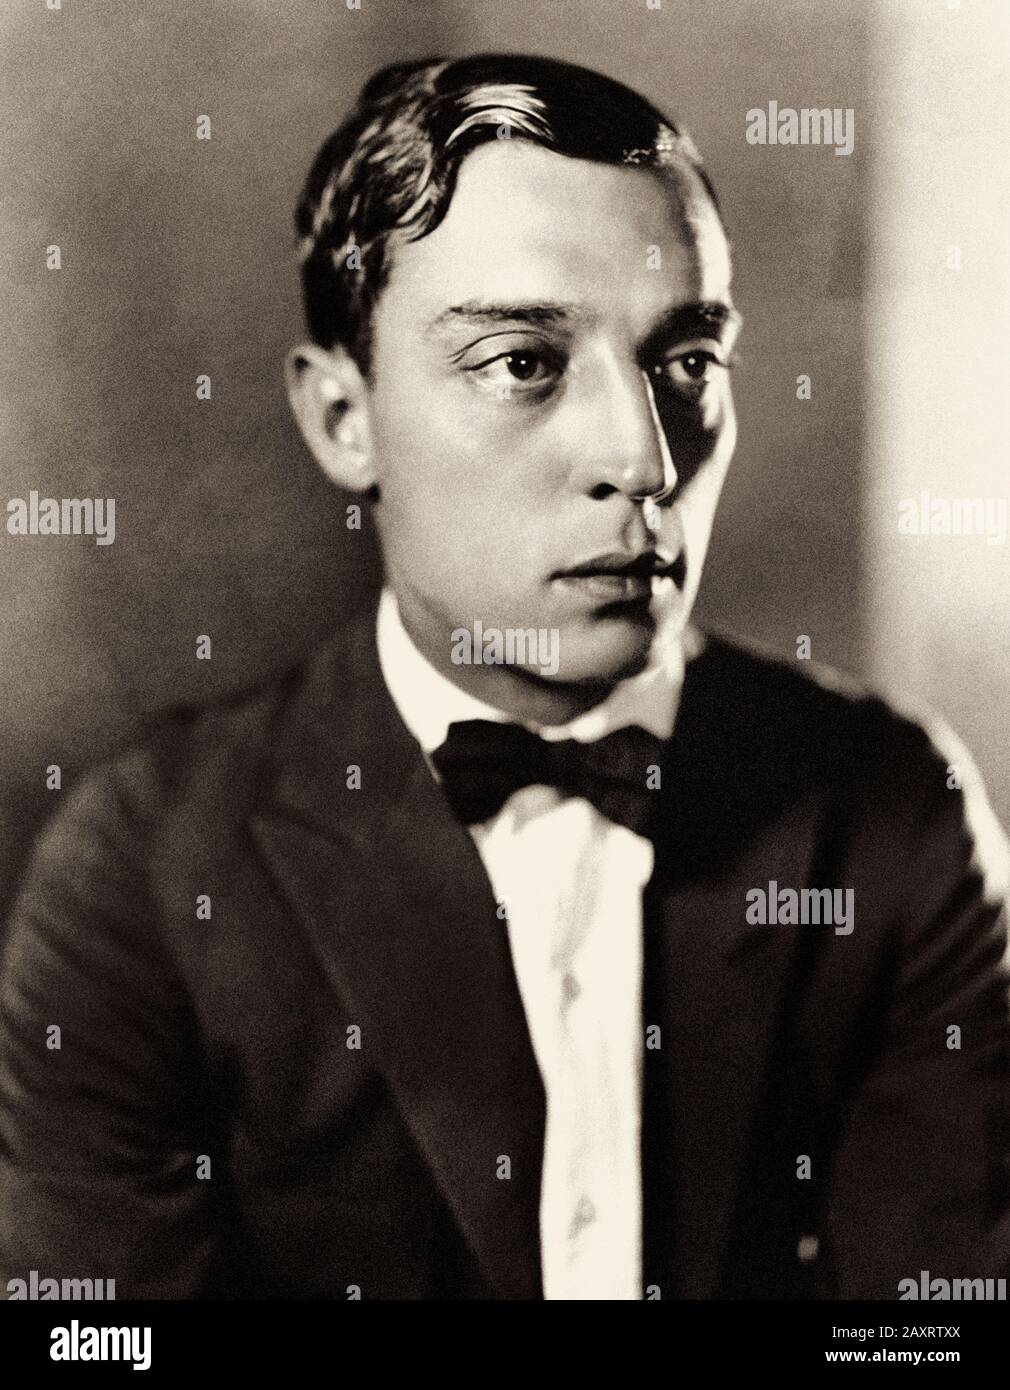 Joseph Frank Keaton (1895 – 1966), conosciuto professionalmente come Buster Keaton, è stato un attore, comico, regista, produttore, sceneggiatore e regista statunitense Foto Stock